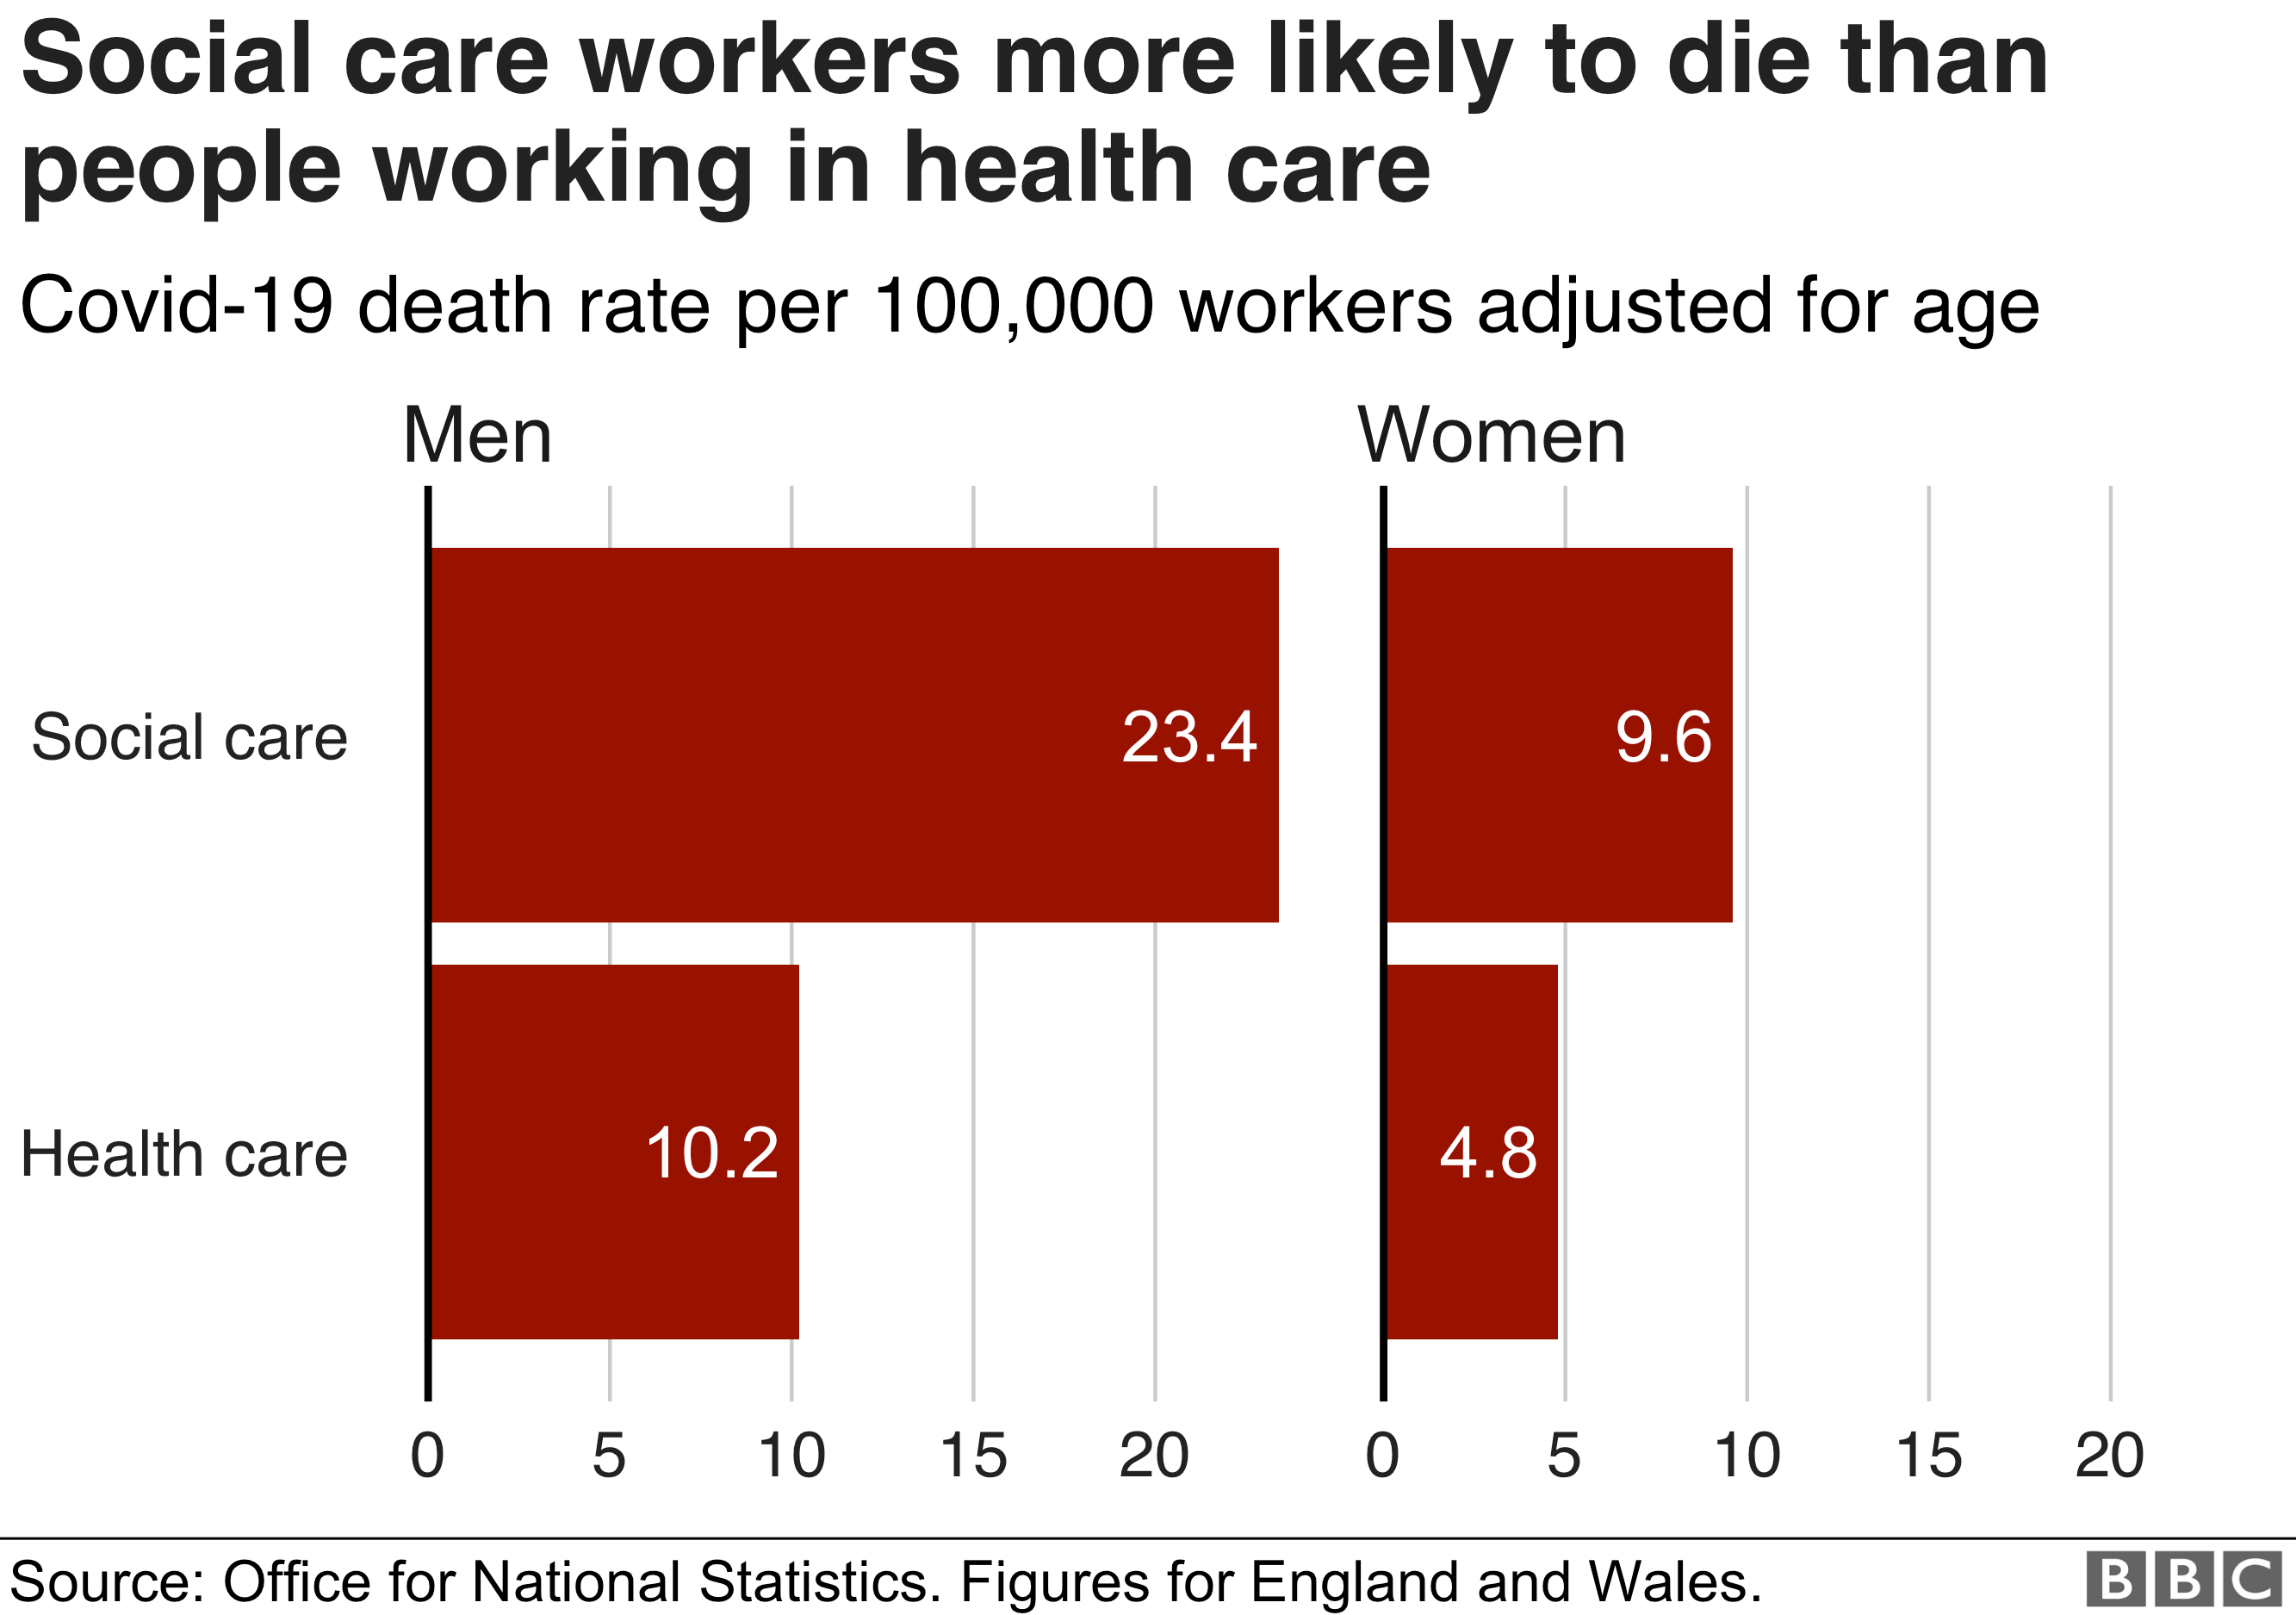 У социальных работников больше шансов умереть, чем у людей, работающих в сфере здравоохранения